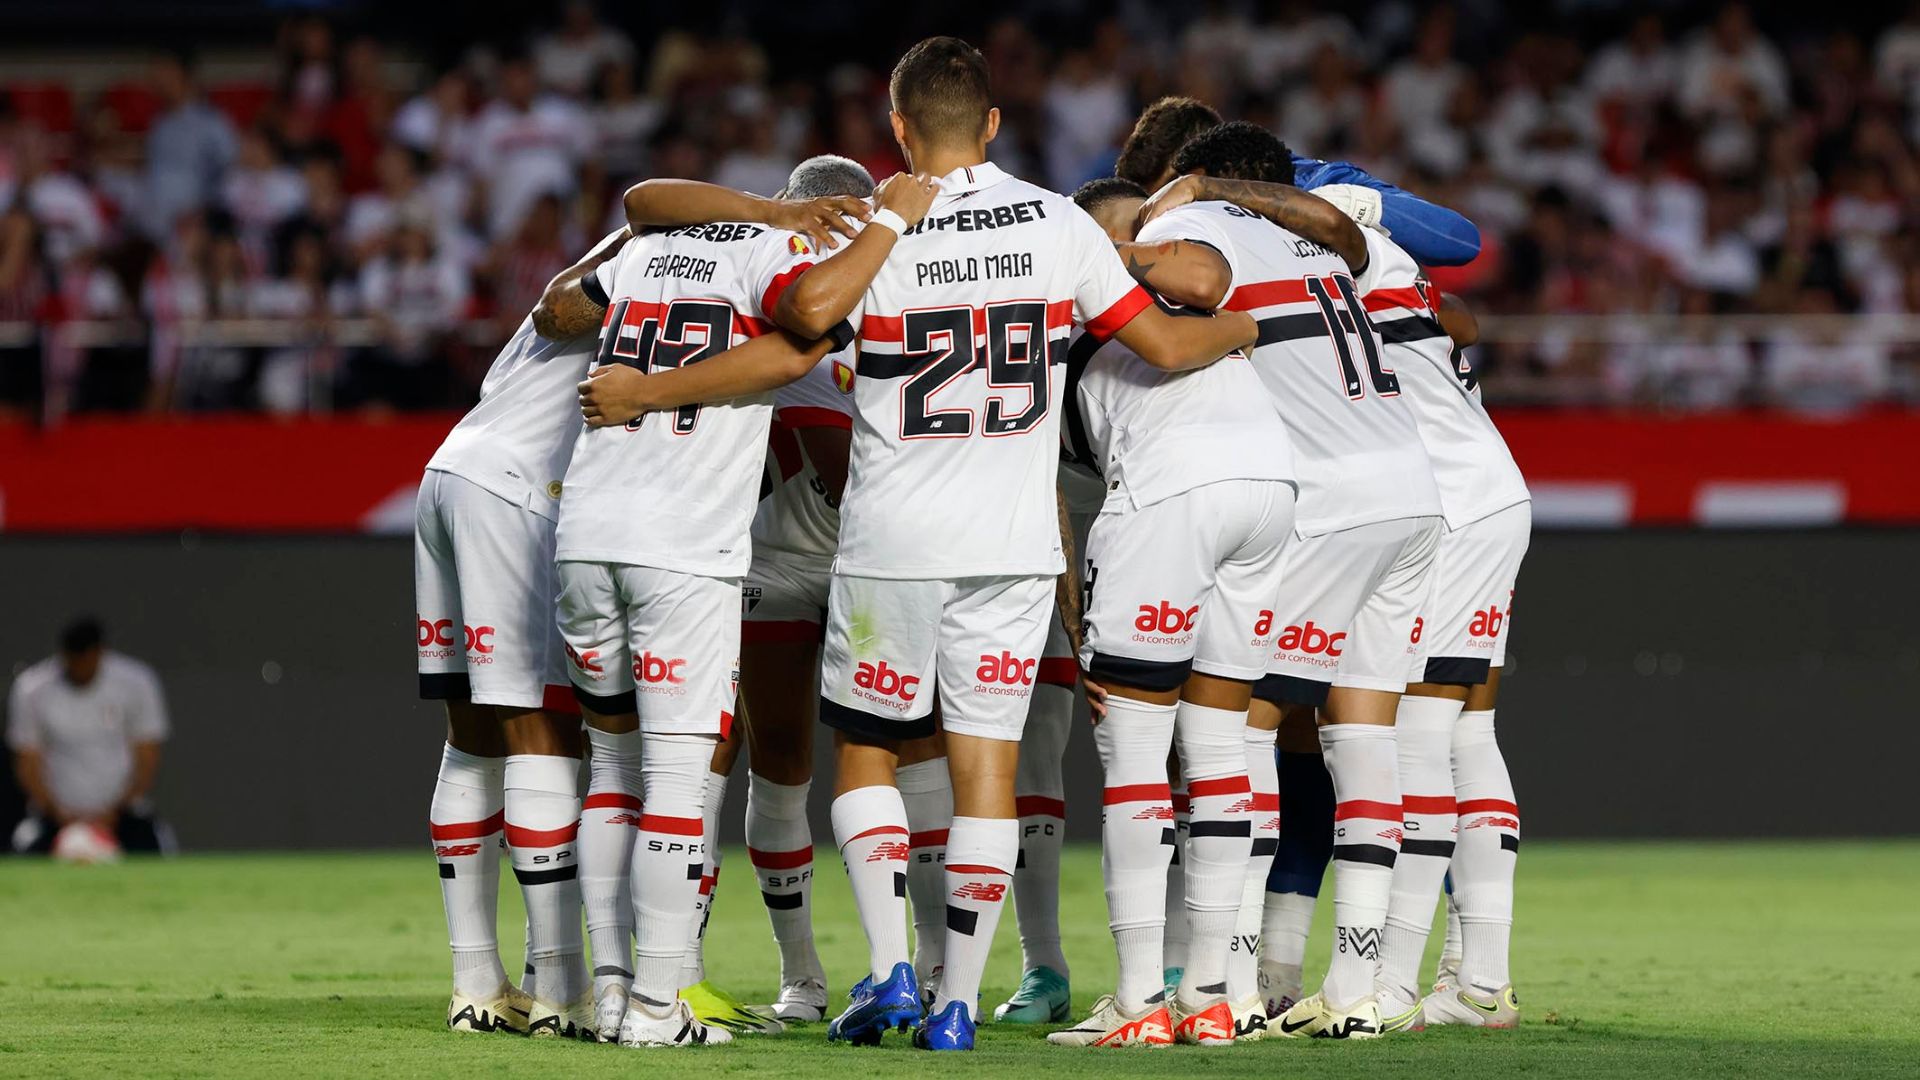 São Paulo was eliminated in Paulistão